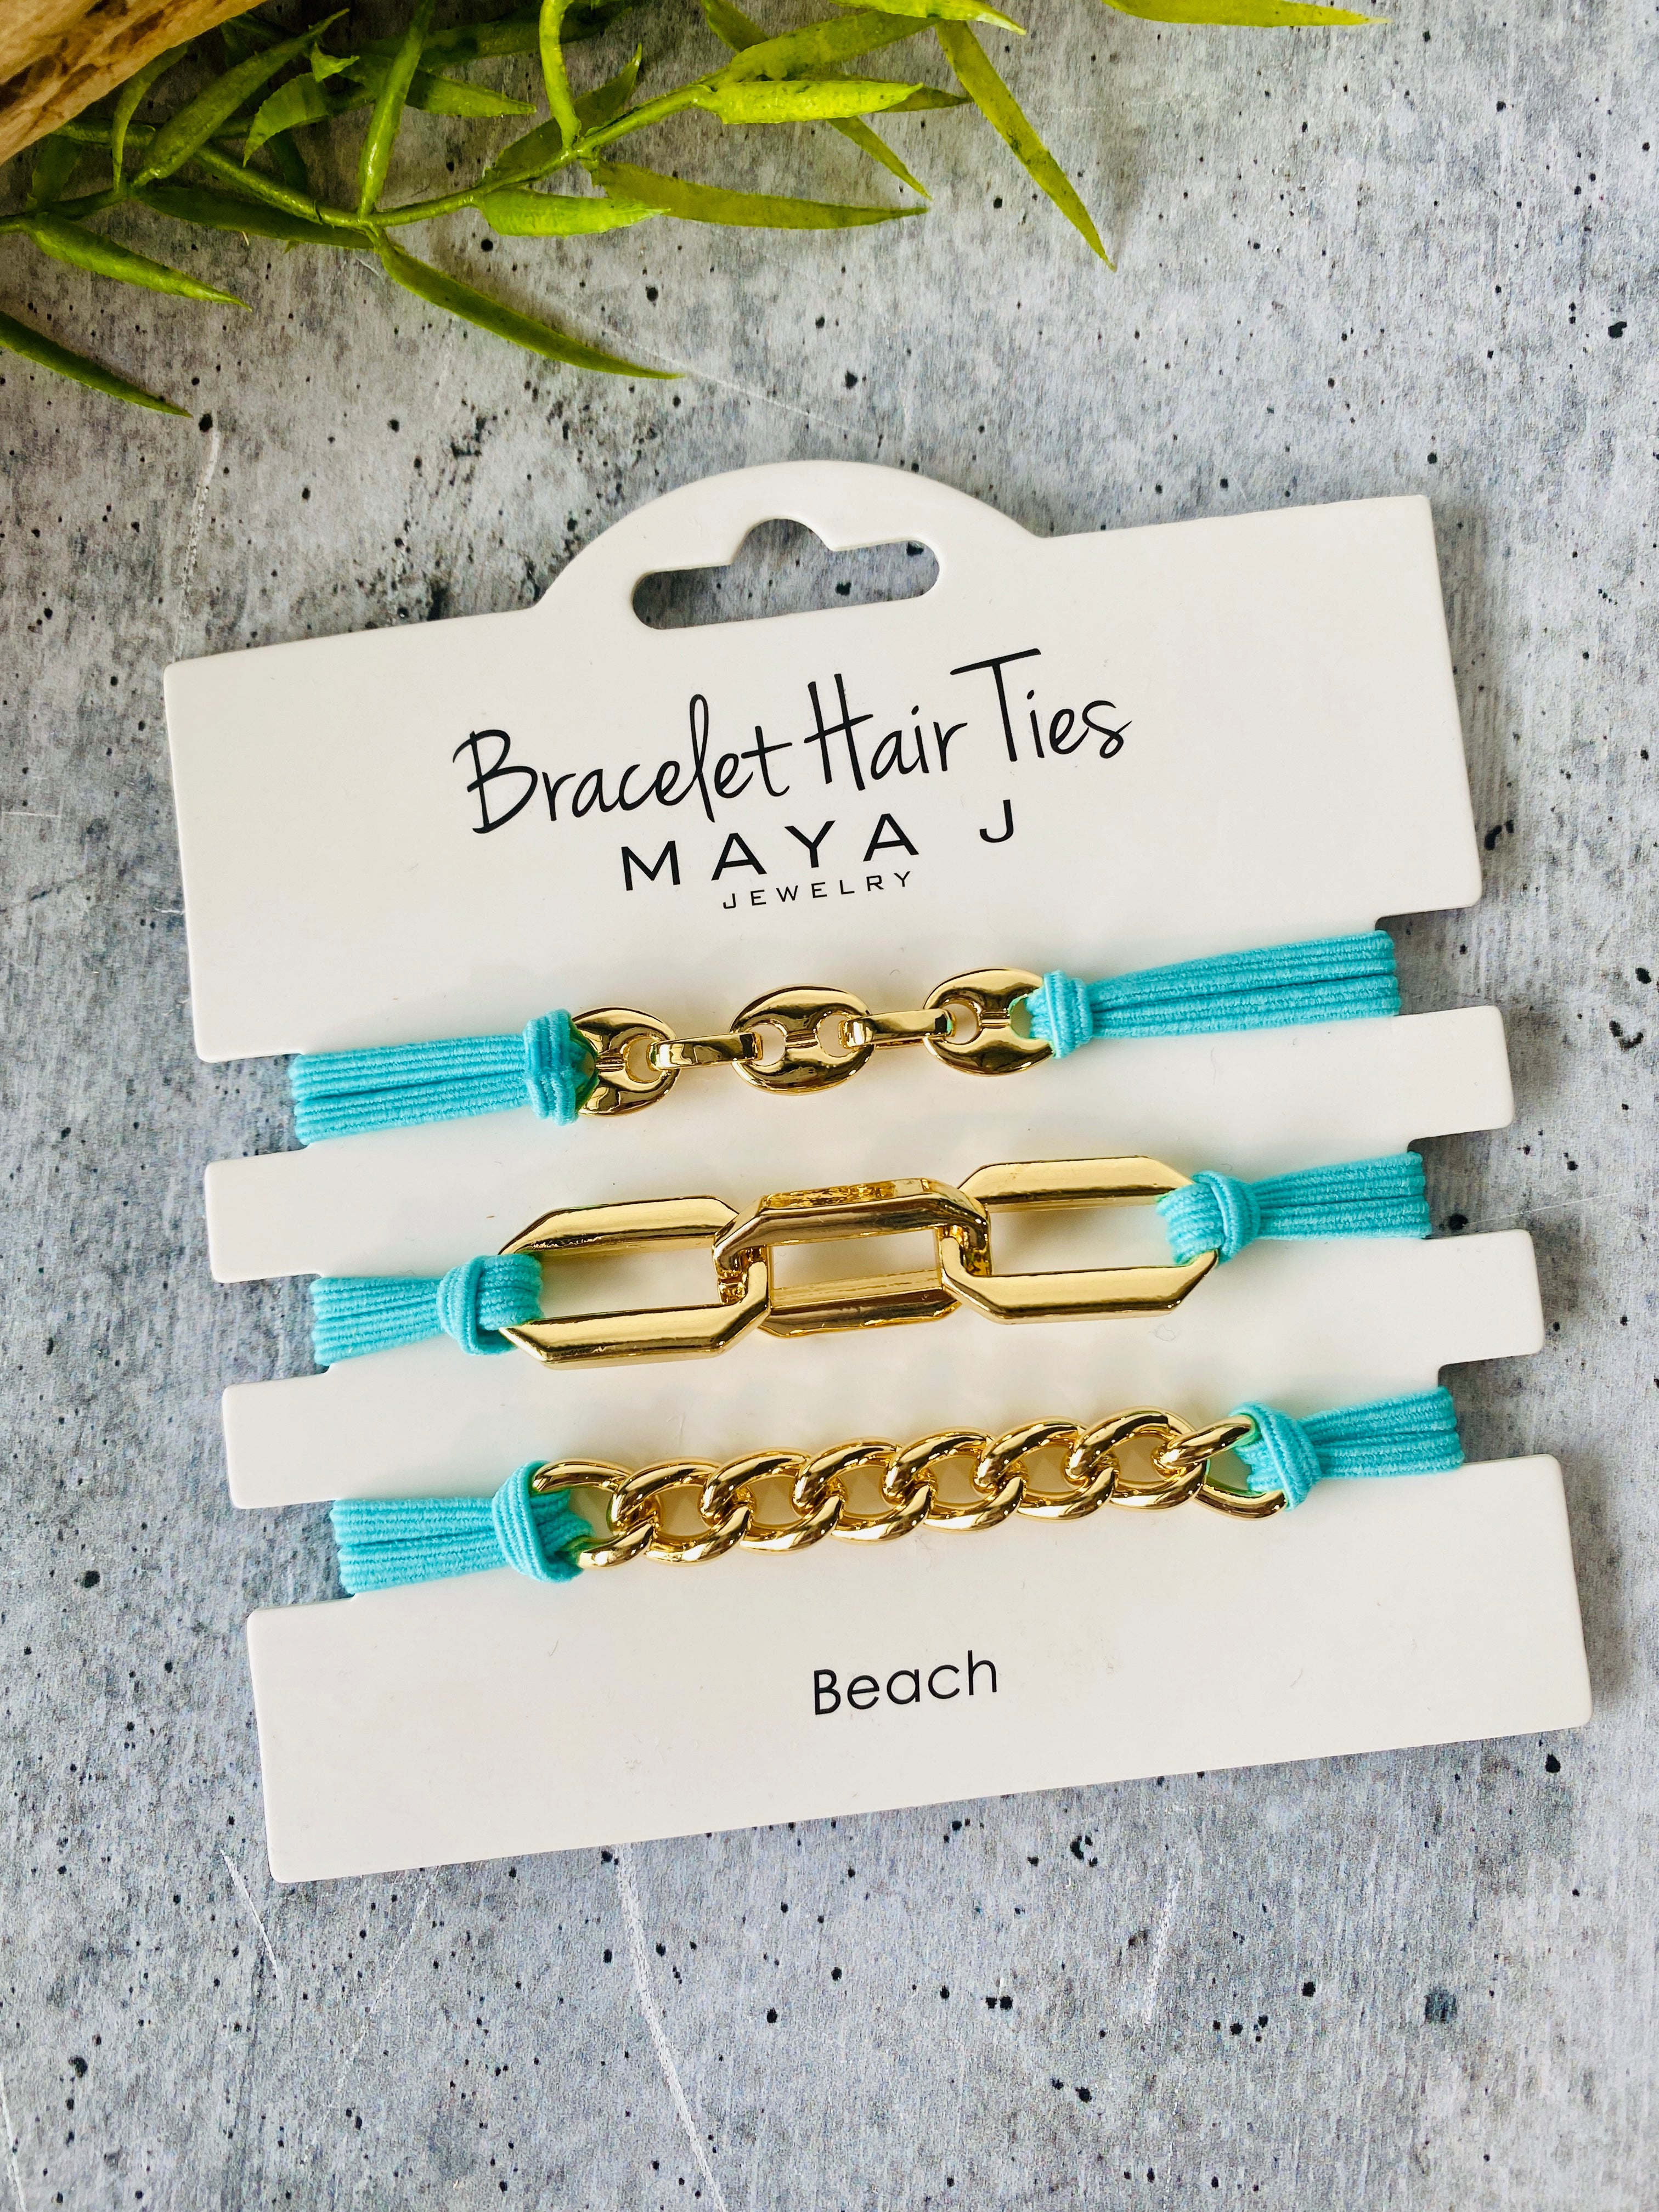 Maya Bracelet Hair Ties